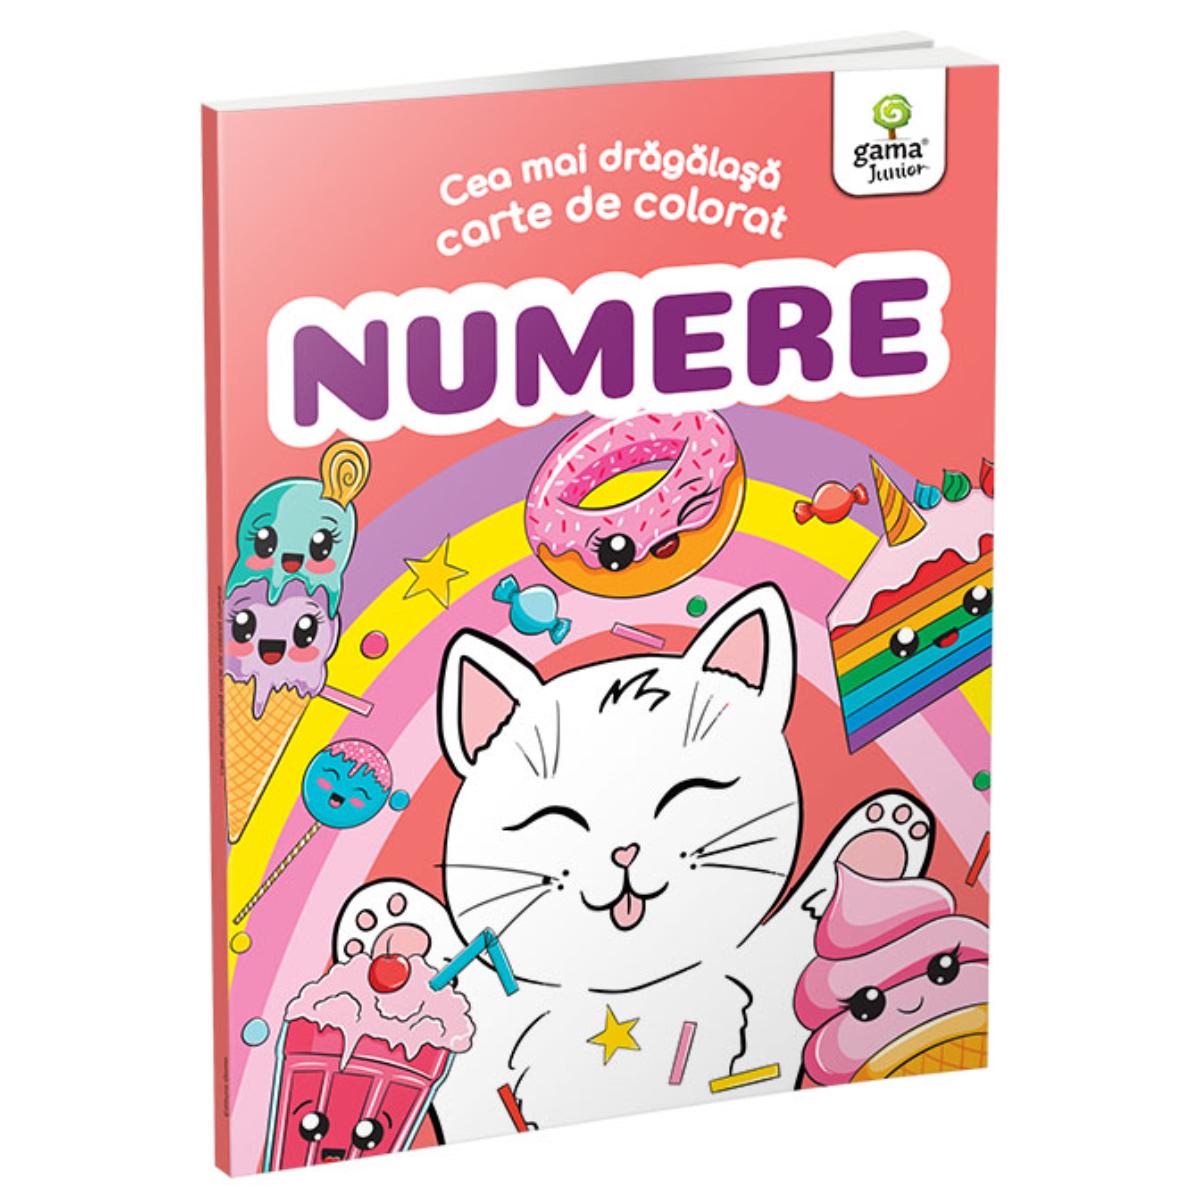 Numere, Cea mai dragalasa carte de colorat